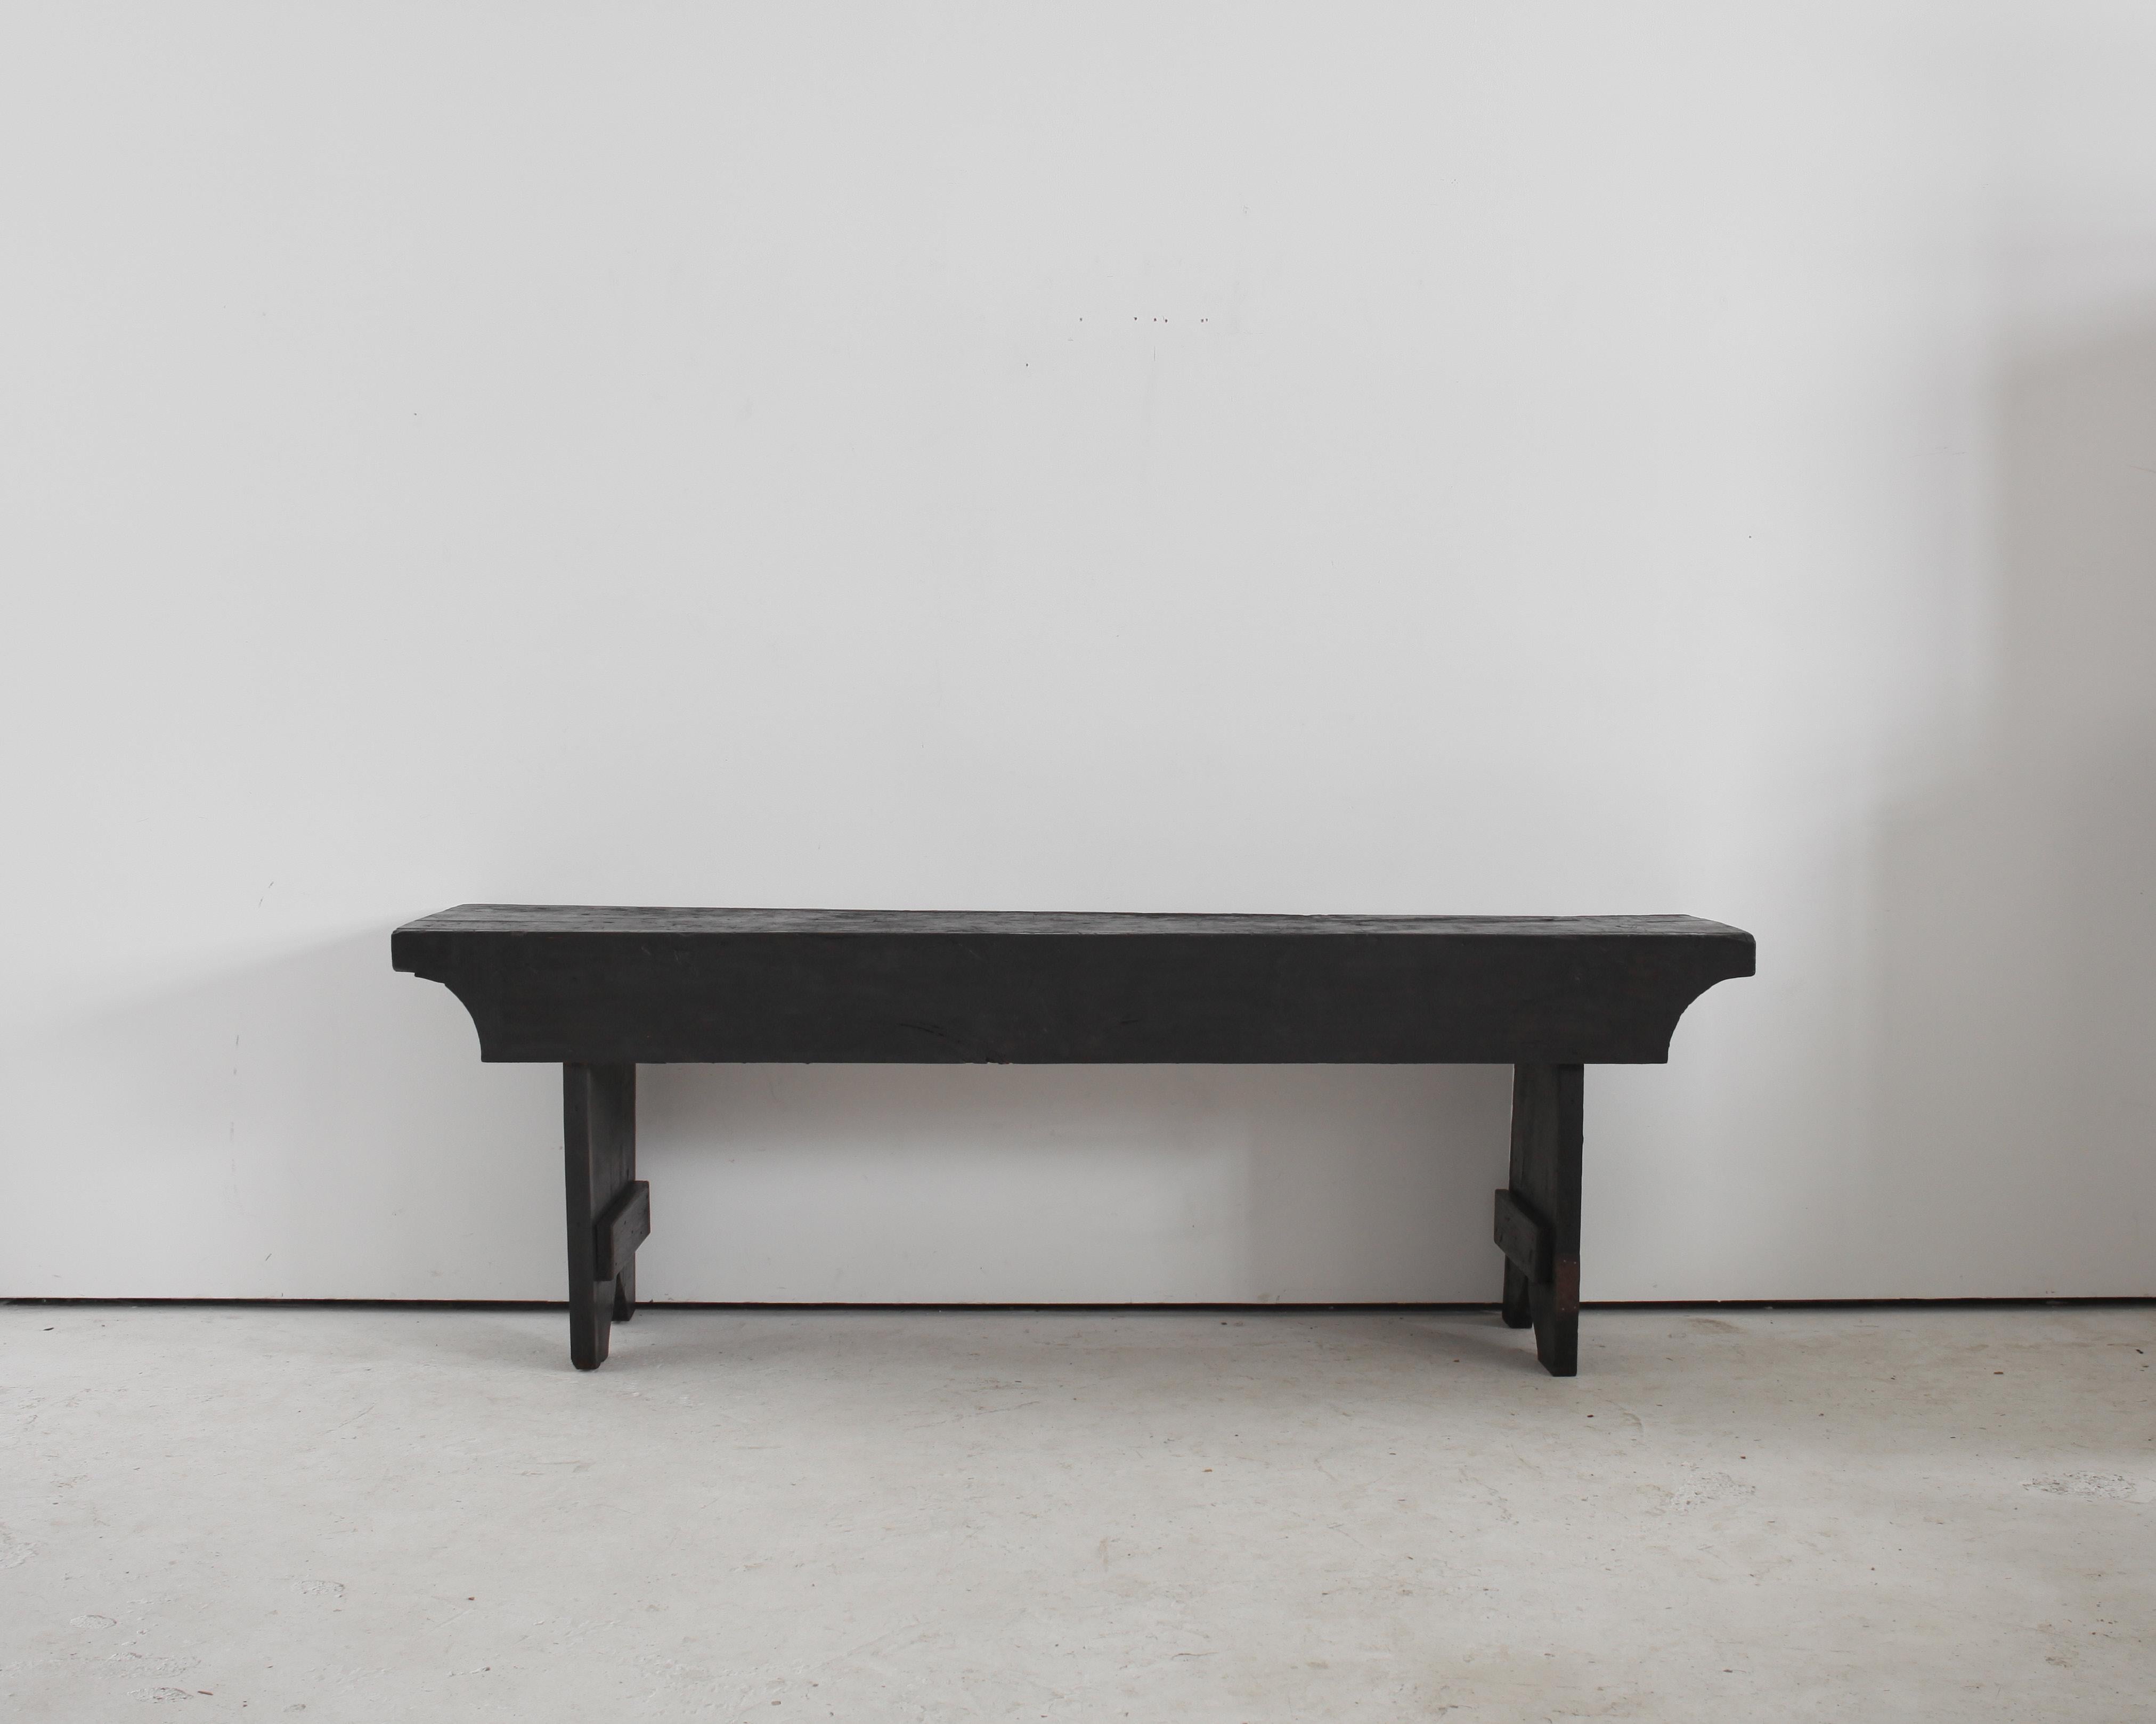 Grande table console en châtaignier carbonisé du début du 19e C., provenant de Catalogne.

Fortement patiné avec un design utilitaire fort.

Style très similaire à celui des tables d'Andorre de même âge.